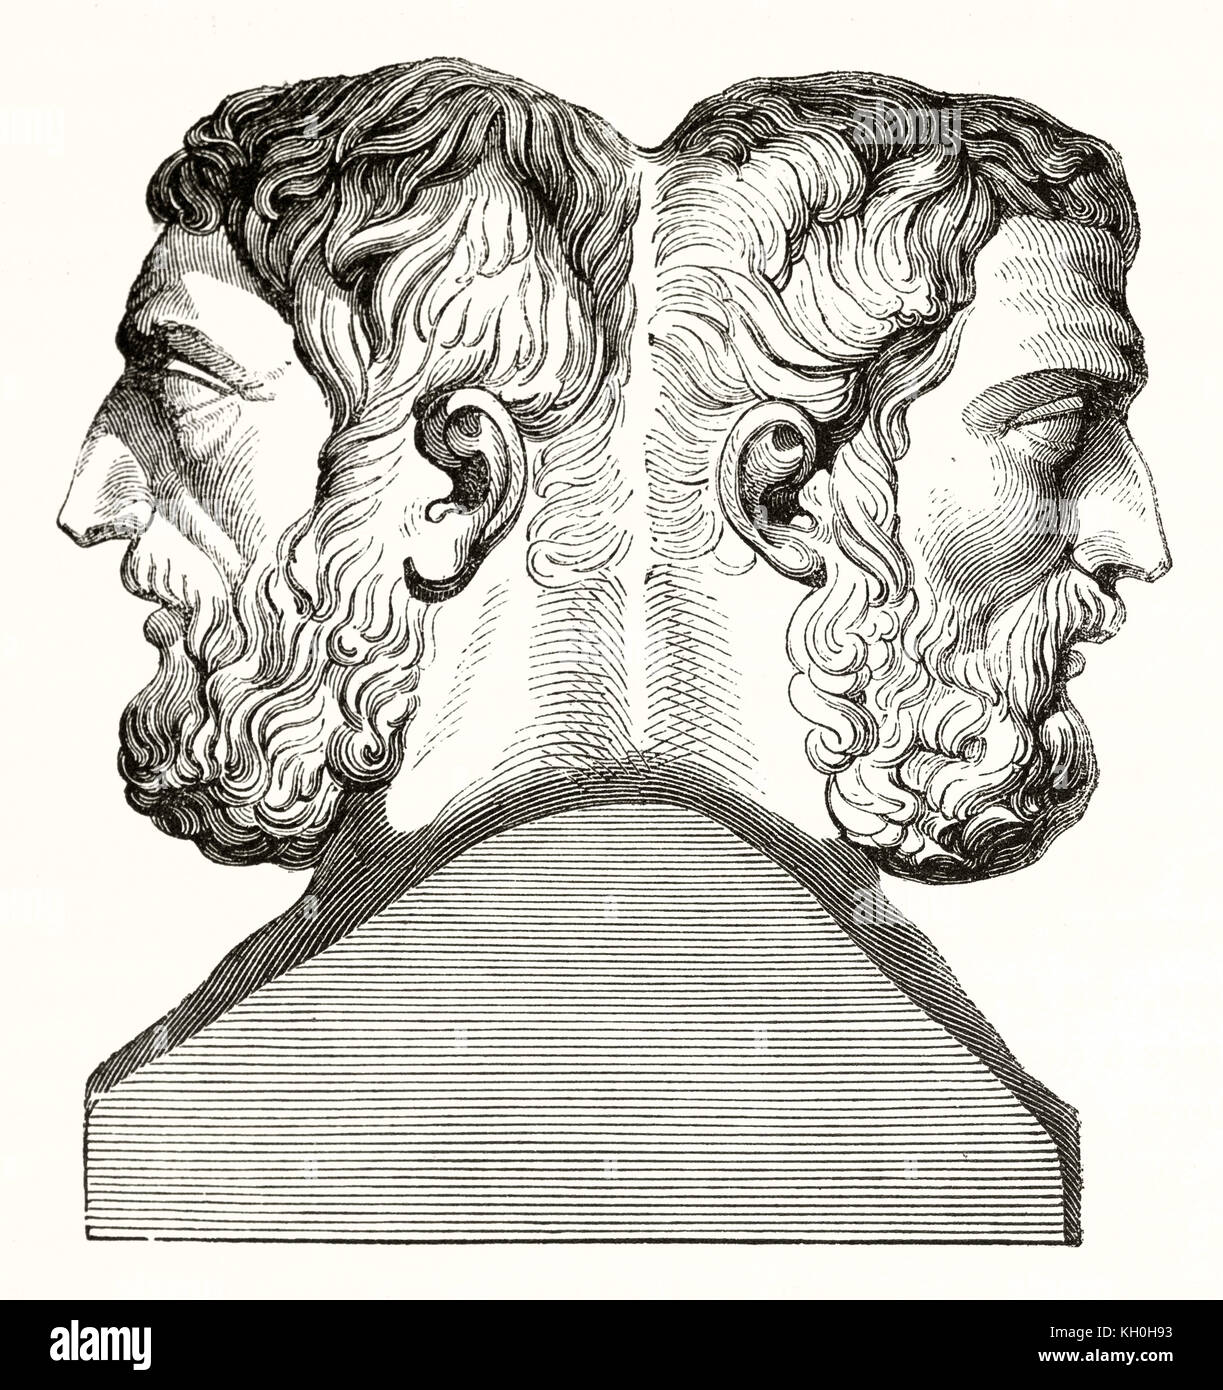 Ancienne reproduction de gravure de type Hermes buste d'Épicure et Metrodorus, conservés dans le musée du Louvre. Publ. sur Magasin Pittoresque, Paris, 1847 Banque D'Images